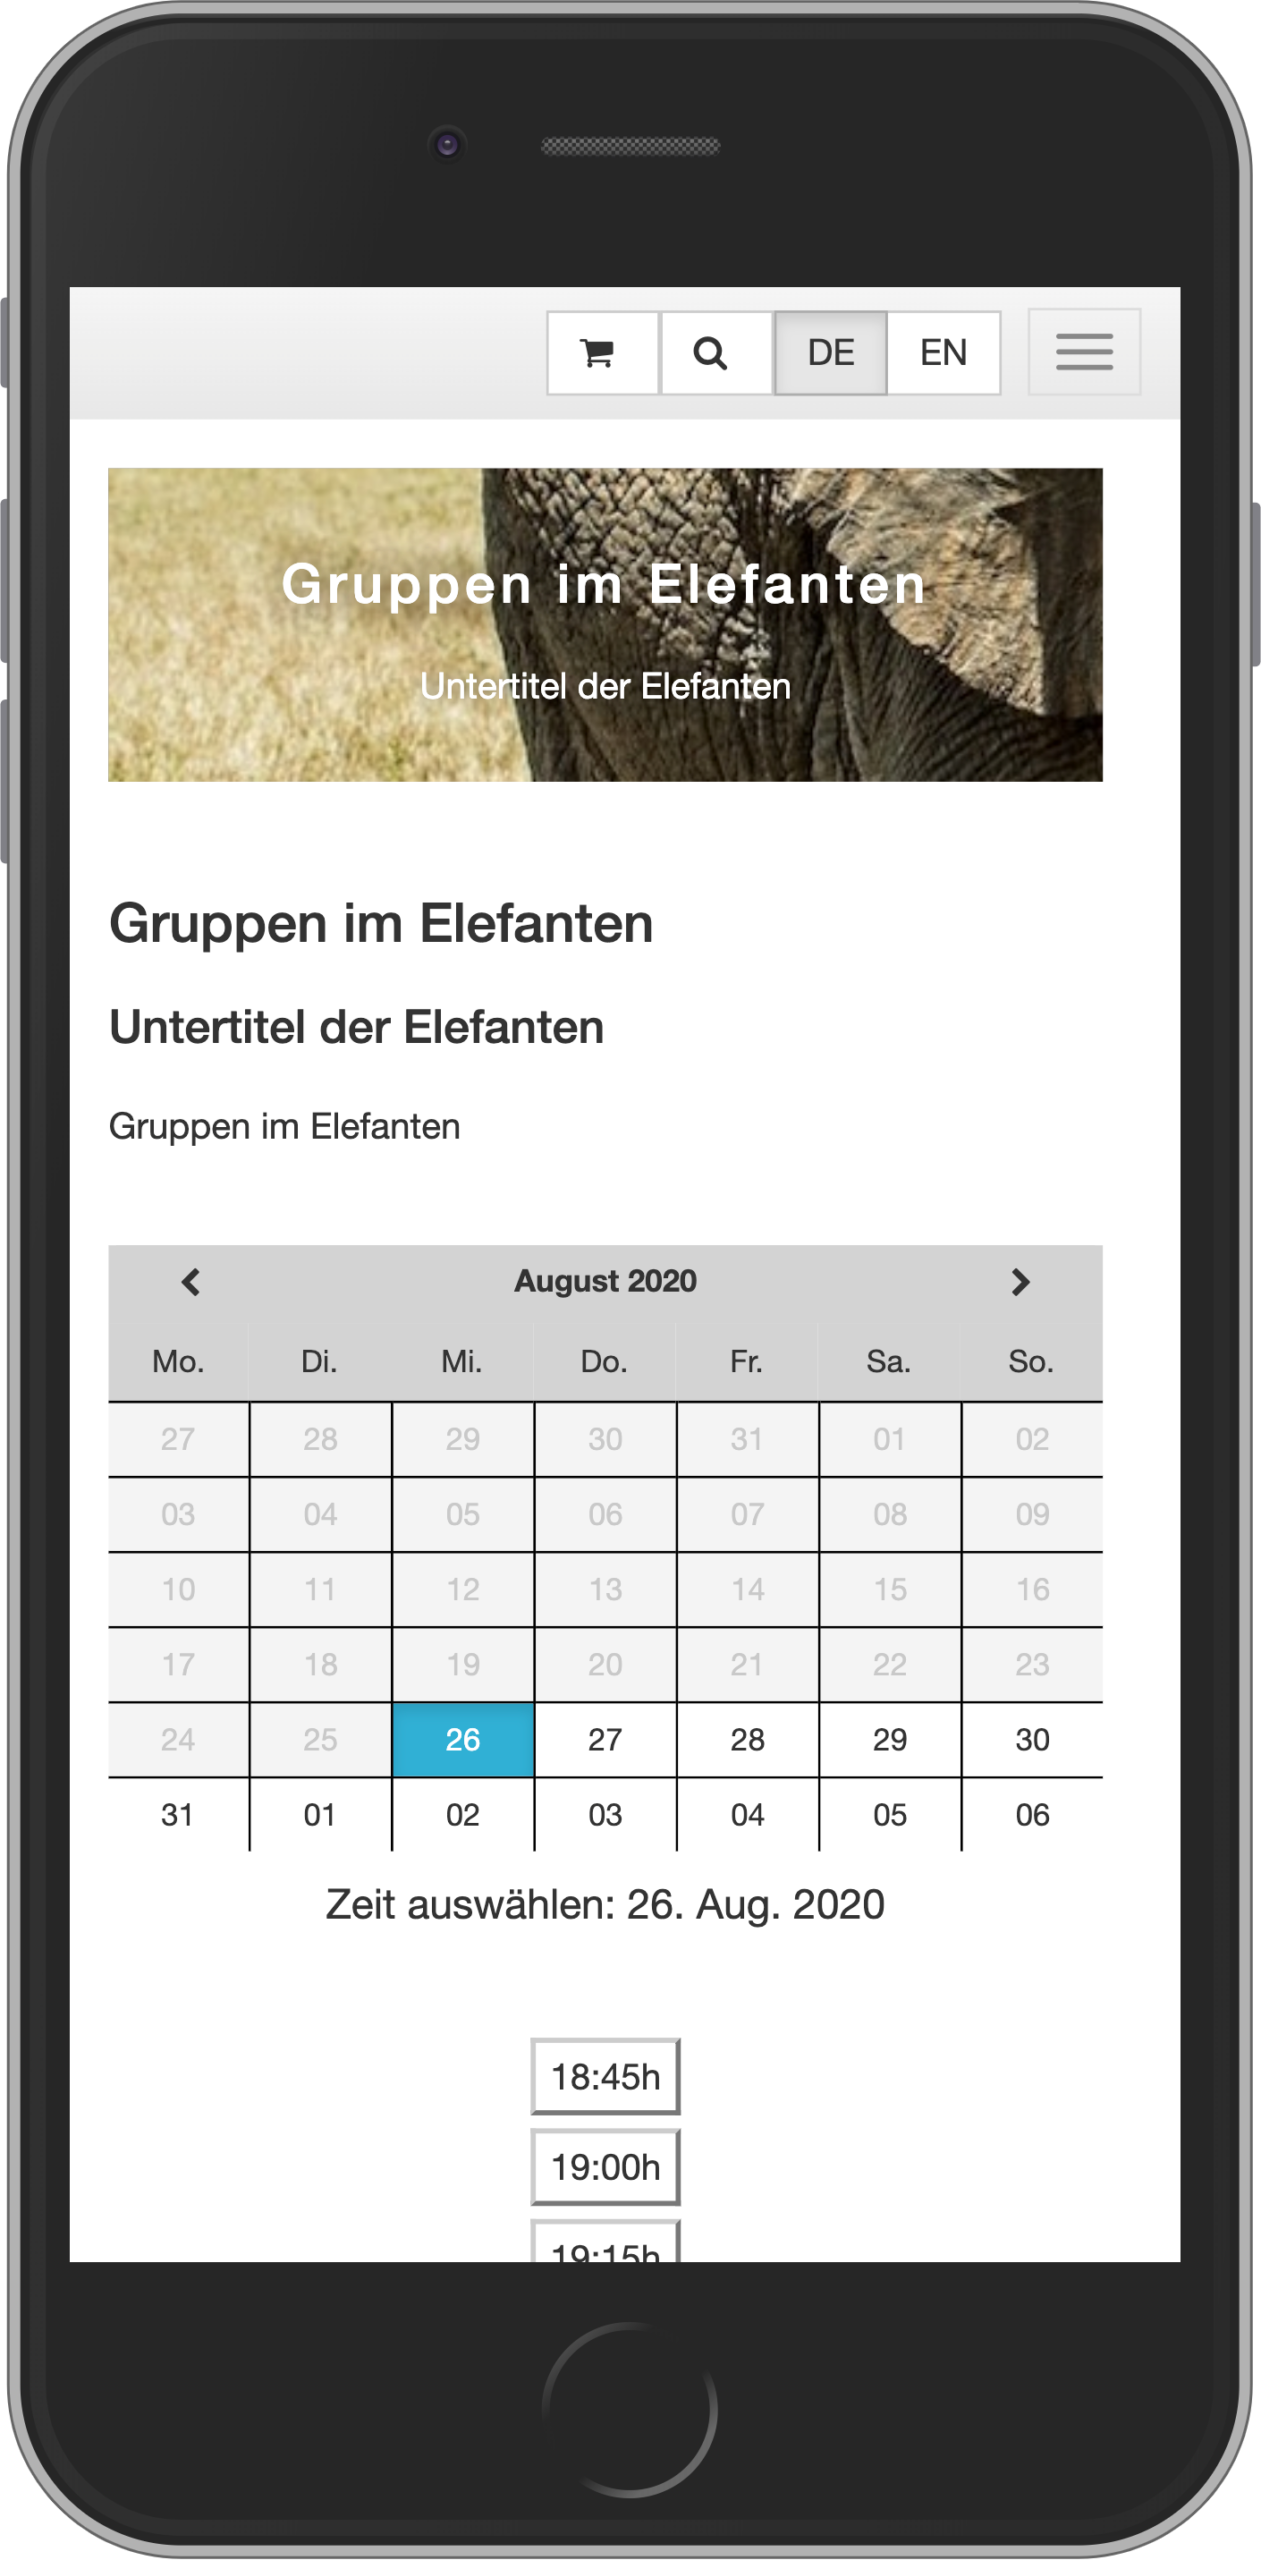 Mobile Ansicht der Datums- und Uhrzeitauswahl im Buchungsprozess für Gruppenangebote im Online-Shop